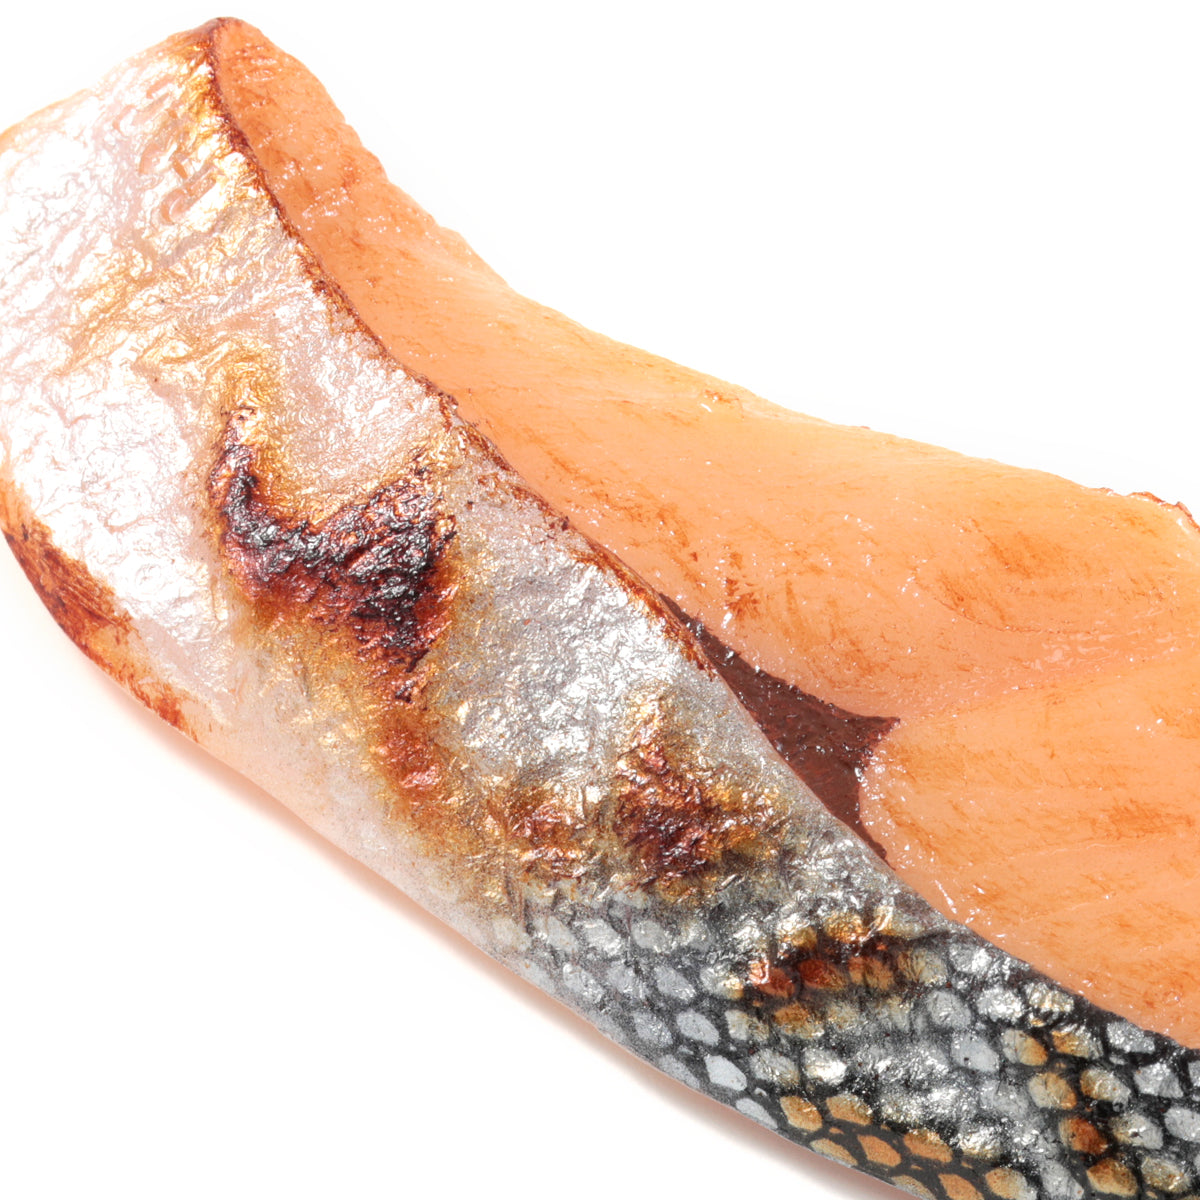 元祖食品サンプル屋「焼魚鮭(中)のマグネット」のアップの商品画像です。